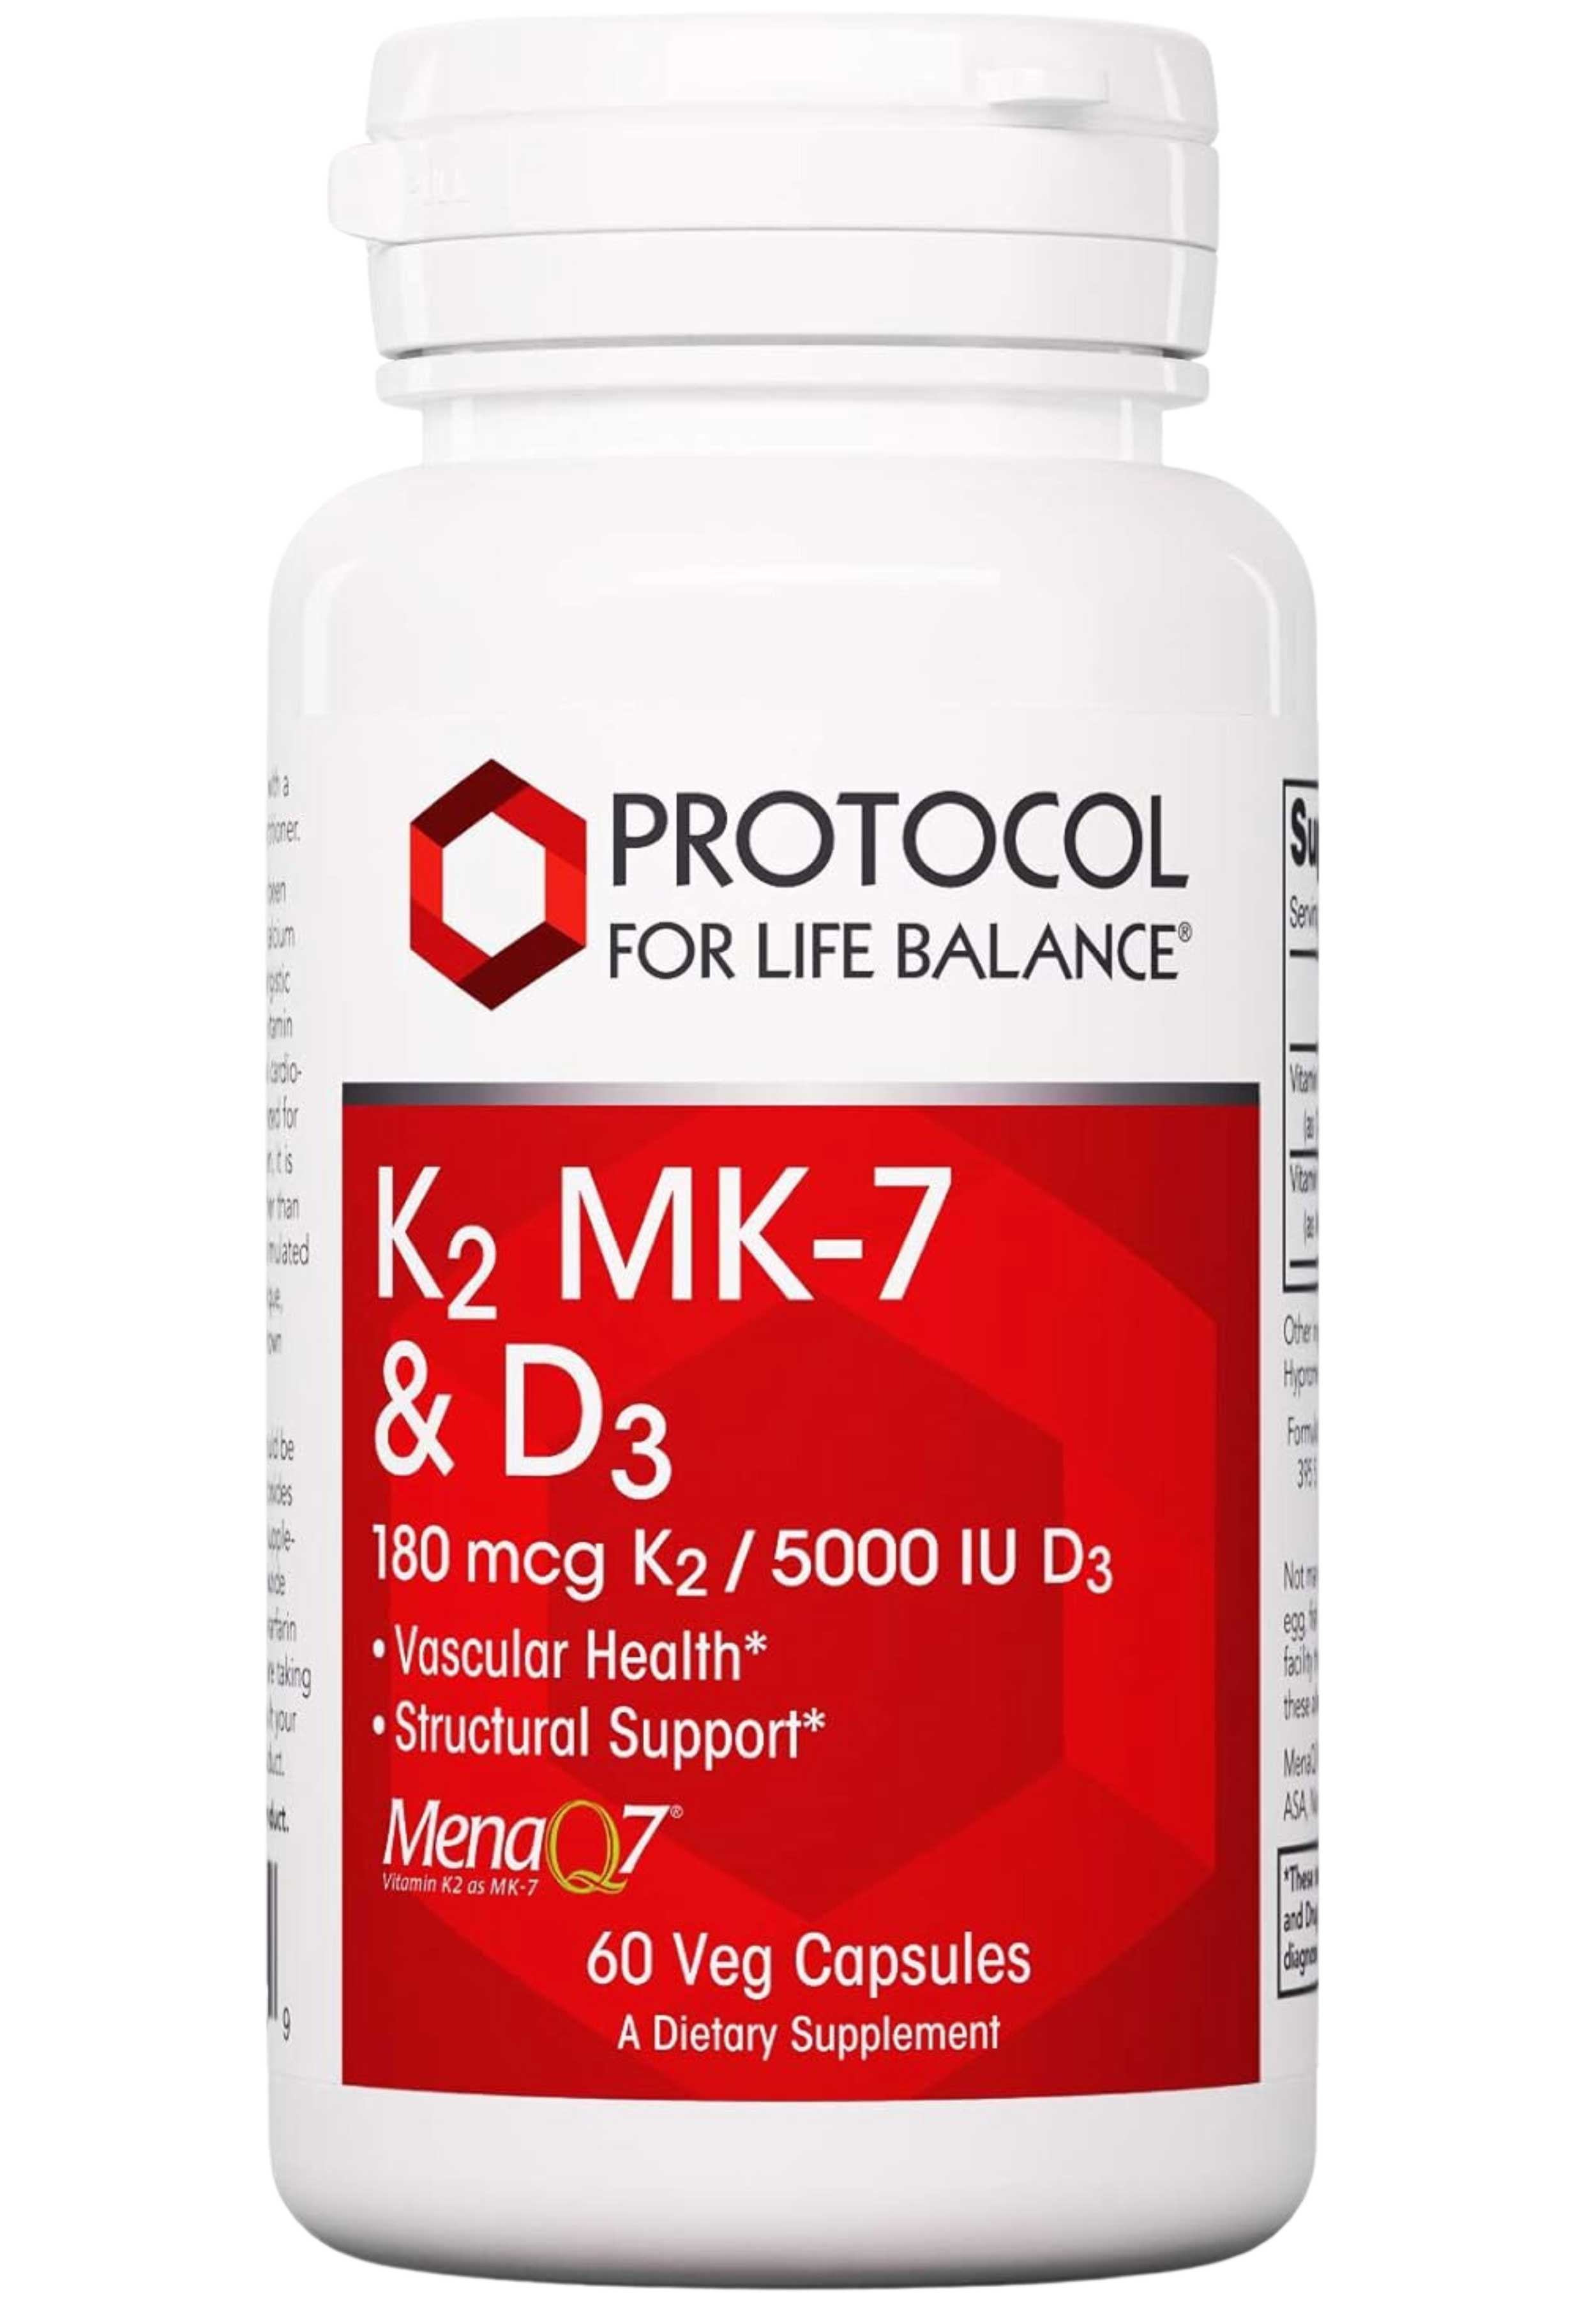 Protocol for Life Balance K2 MK-7 & D3